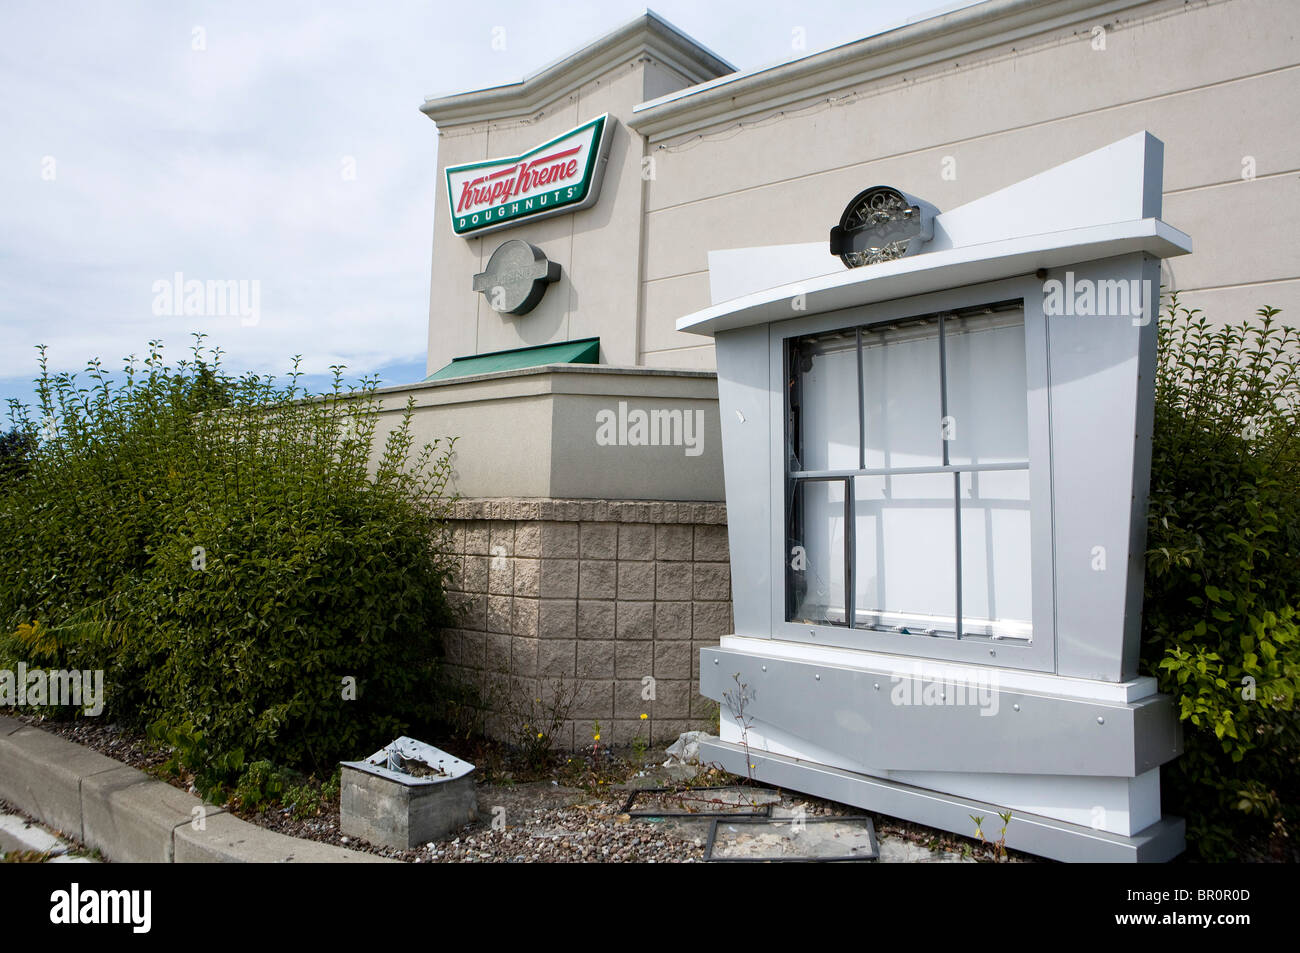 Un magasin de beignes Krispy Kreme. Banque D'Images